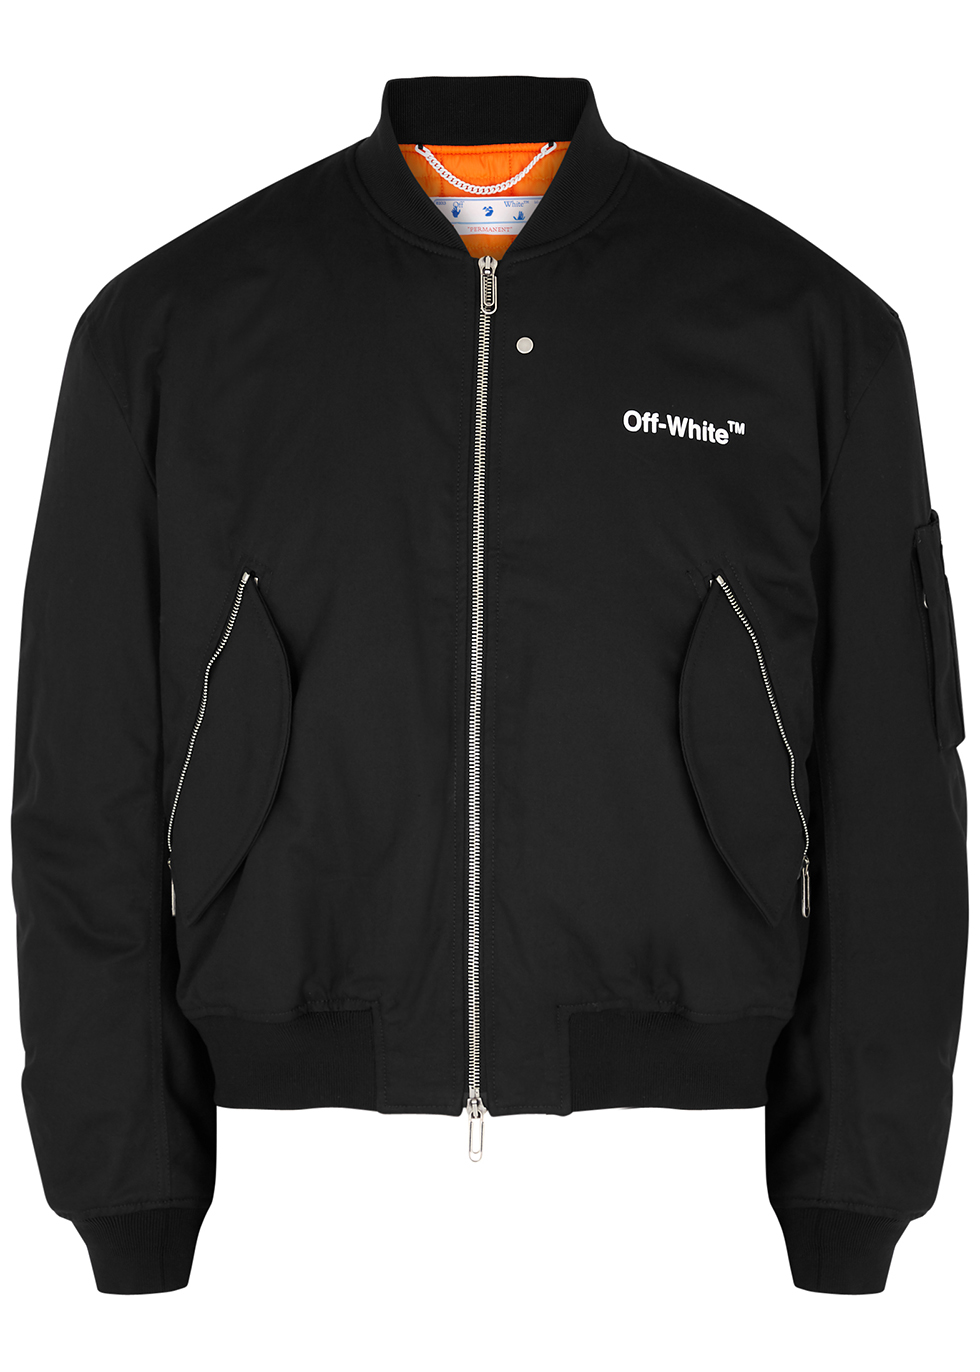 Off-White Black logo cotton bomber jacket - Harvey Nichols